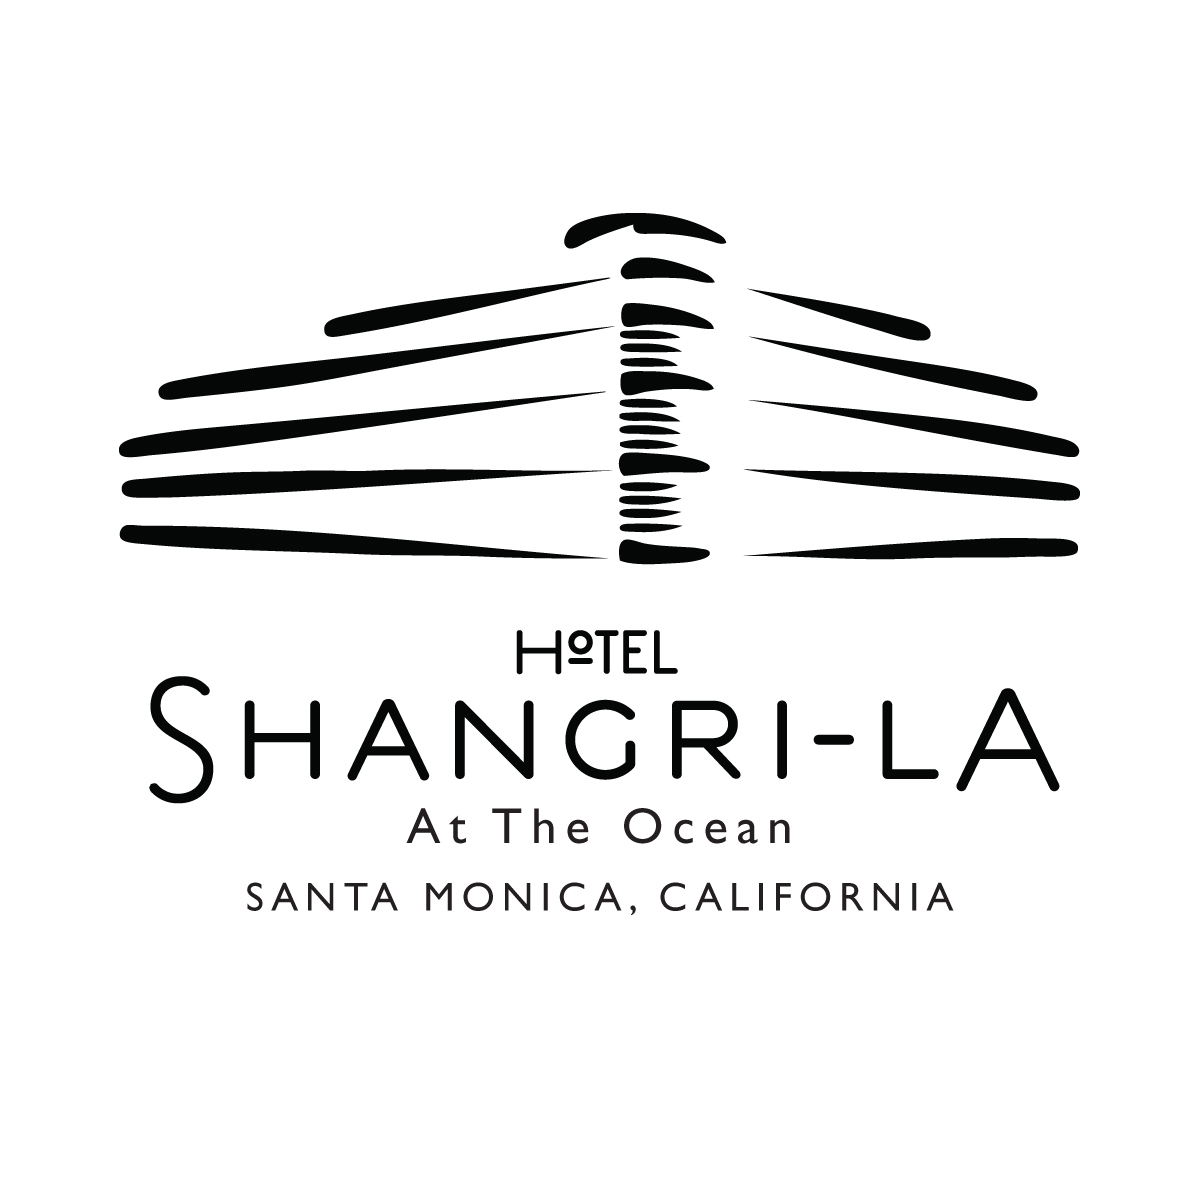 Hotel Shangri-la at the Ocean in Santa Monica